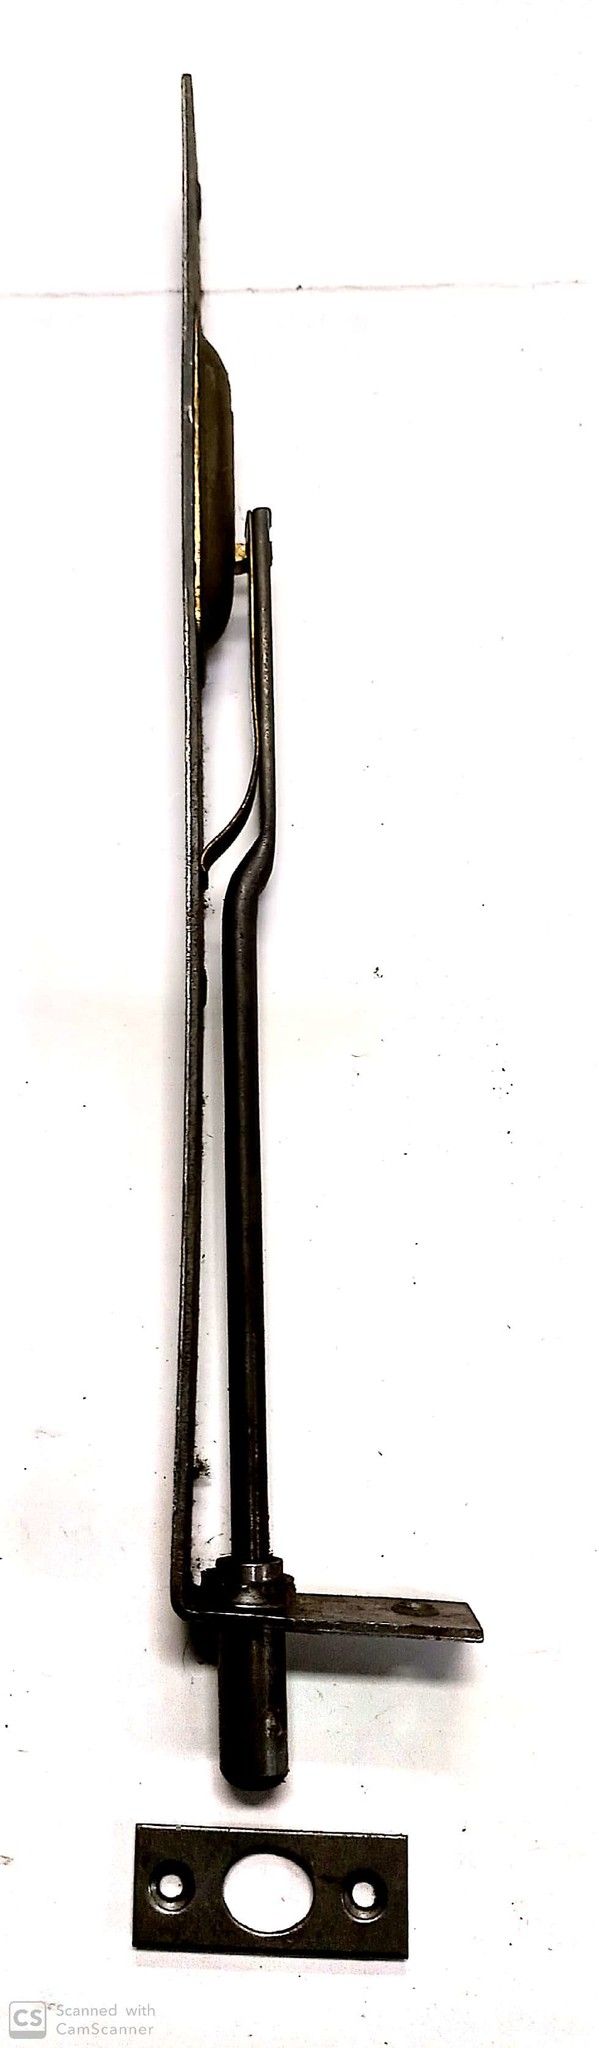 Catenaccio ad unghia cm 25 frontale mm 20 in ferro grezzo serie pesante